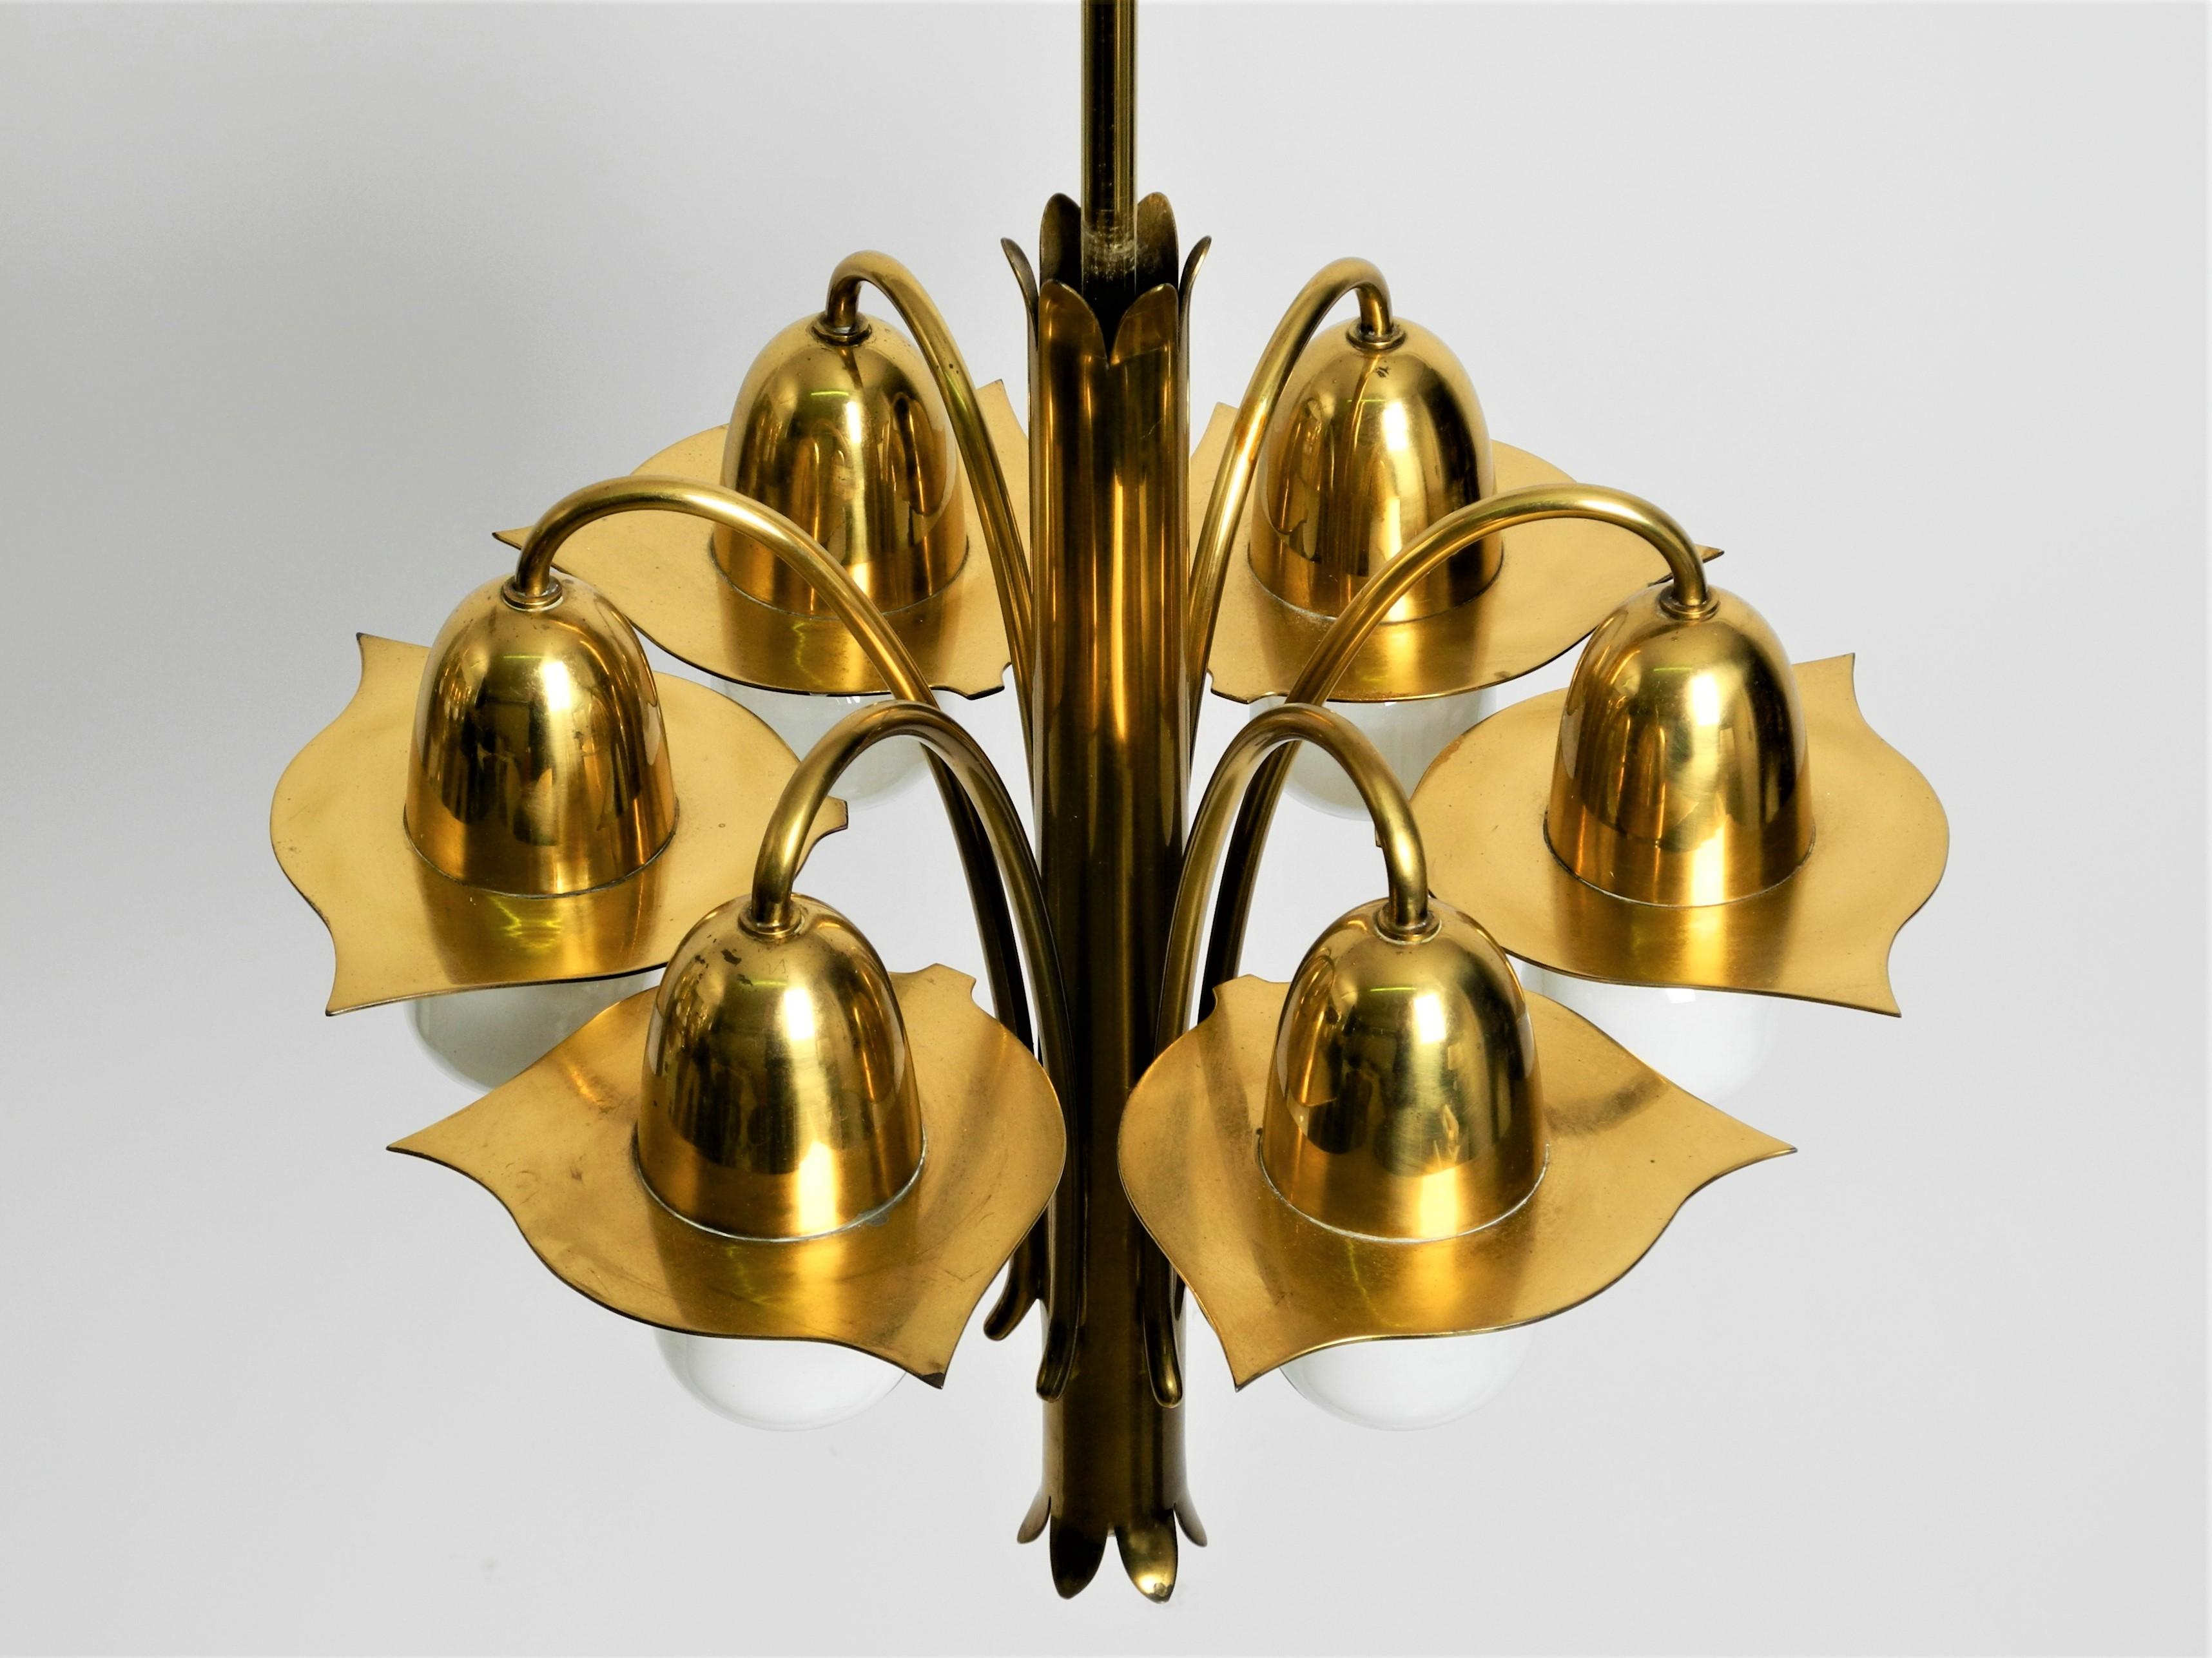 Pair of Richard Riemerschmid Pendant Lamps Chandeliers Art Nouveau, Germany 1920 For Sale 9